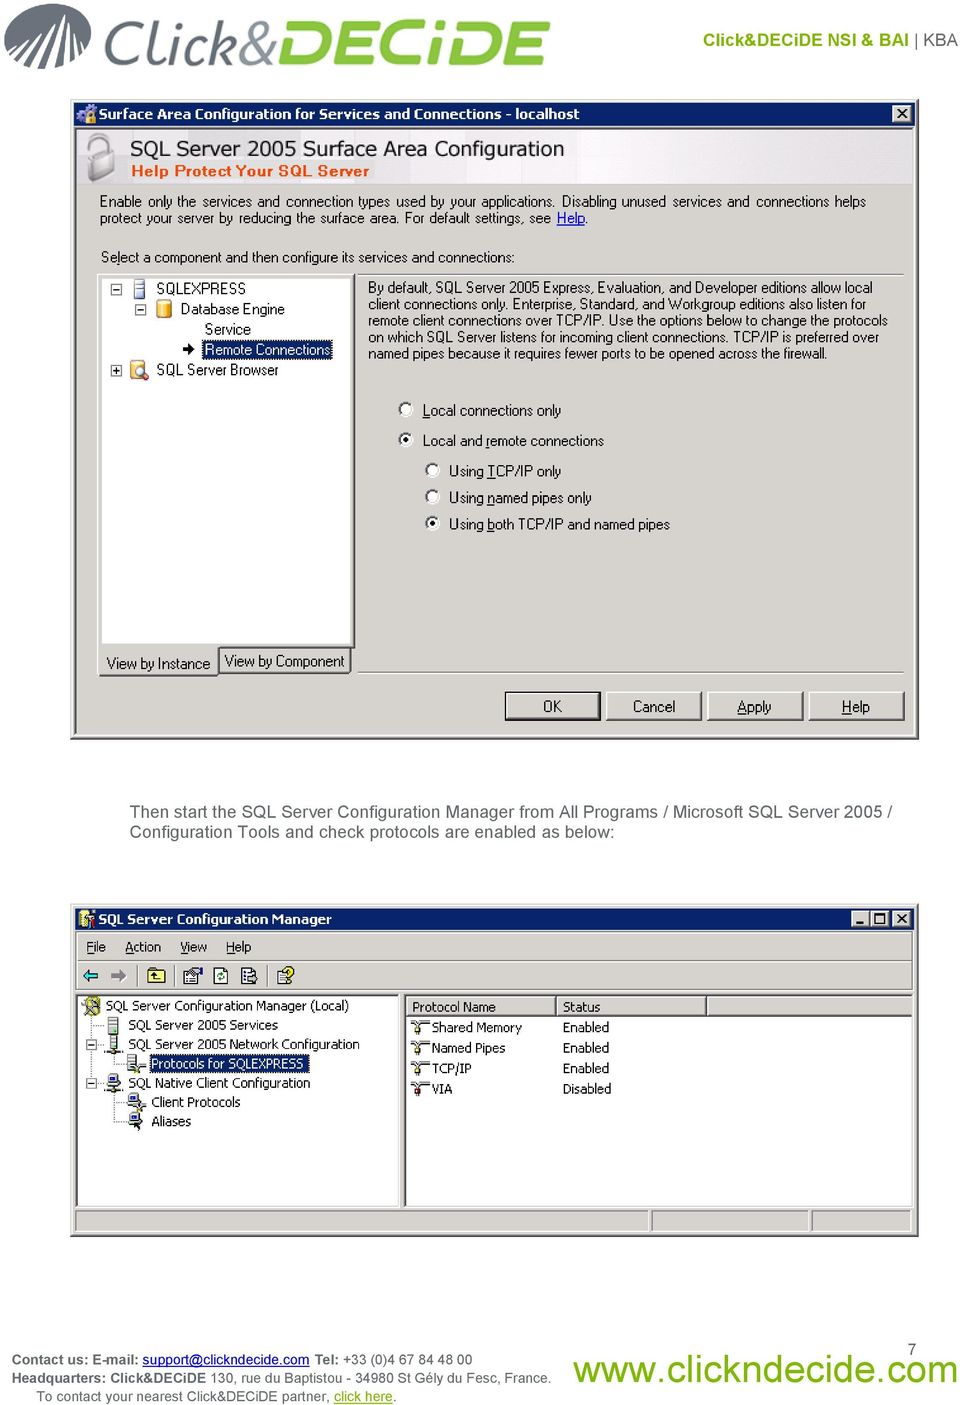 SQL Server 2005 / Configuration Tools